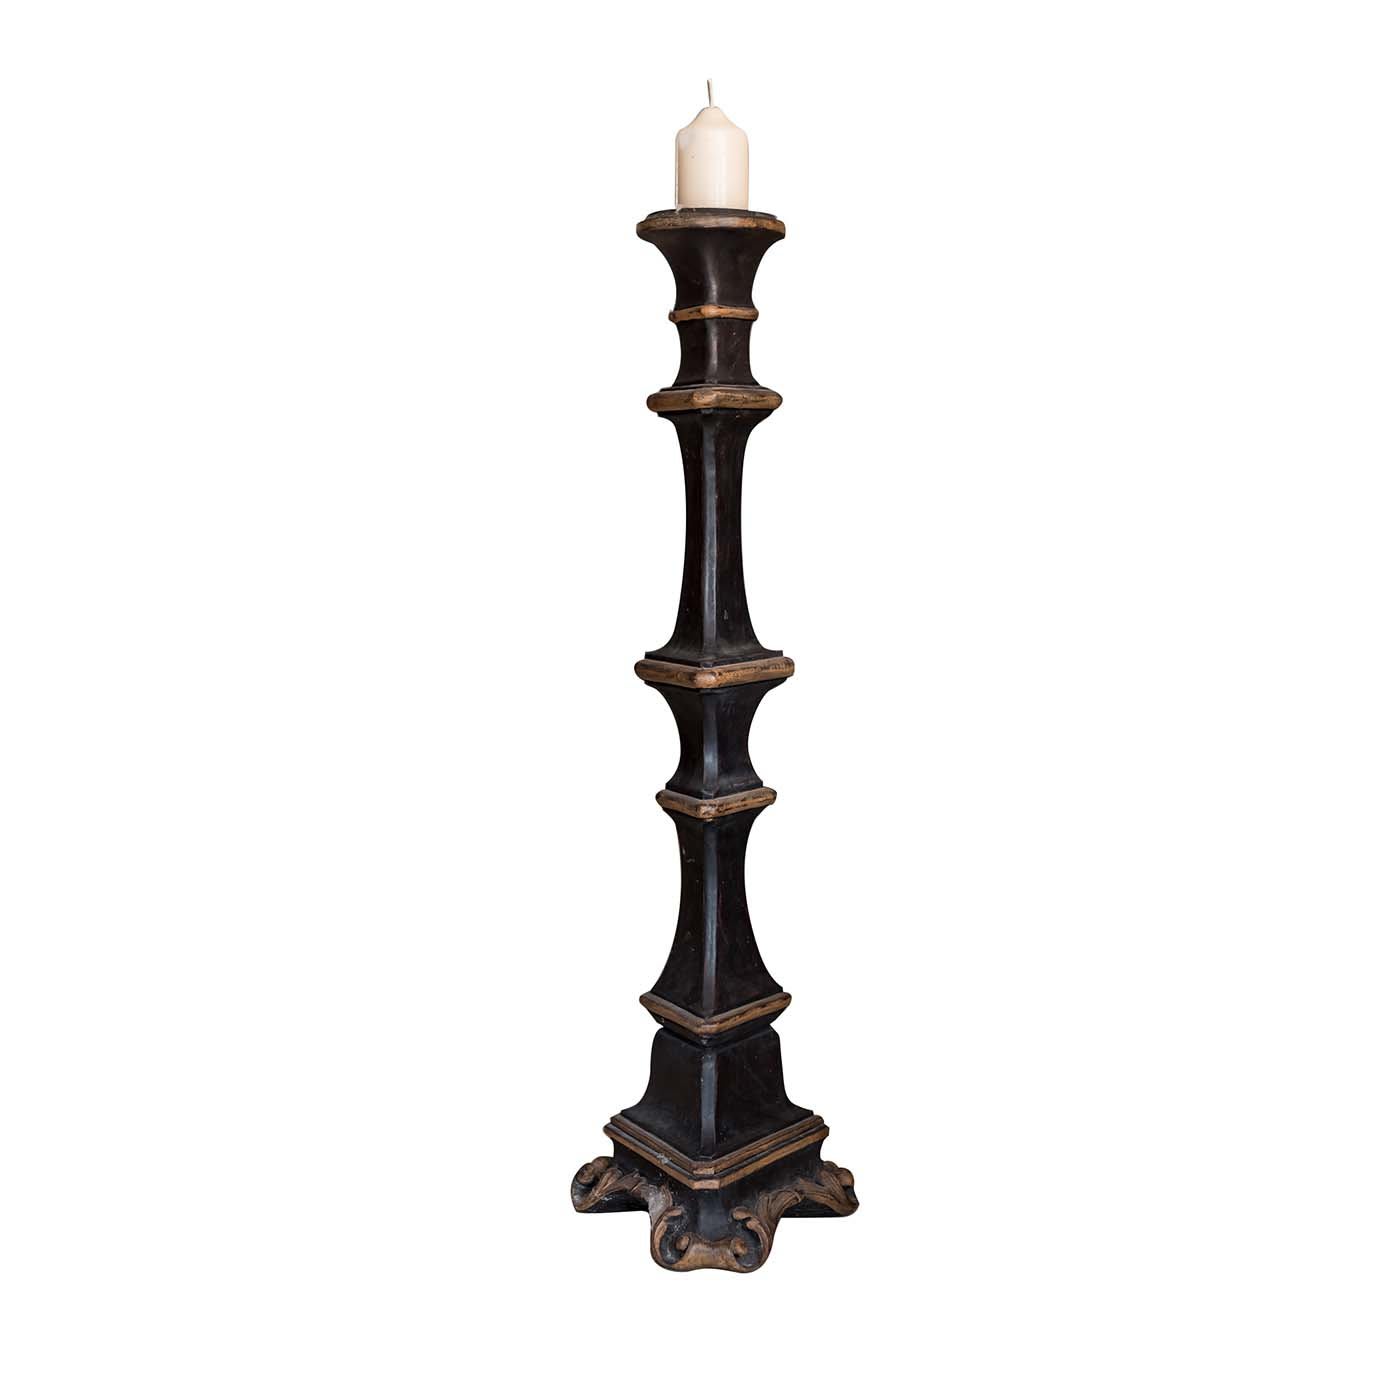 Gubbio candle holder in black wood - Porte Italia